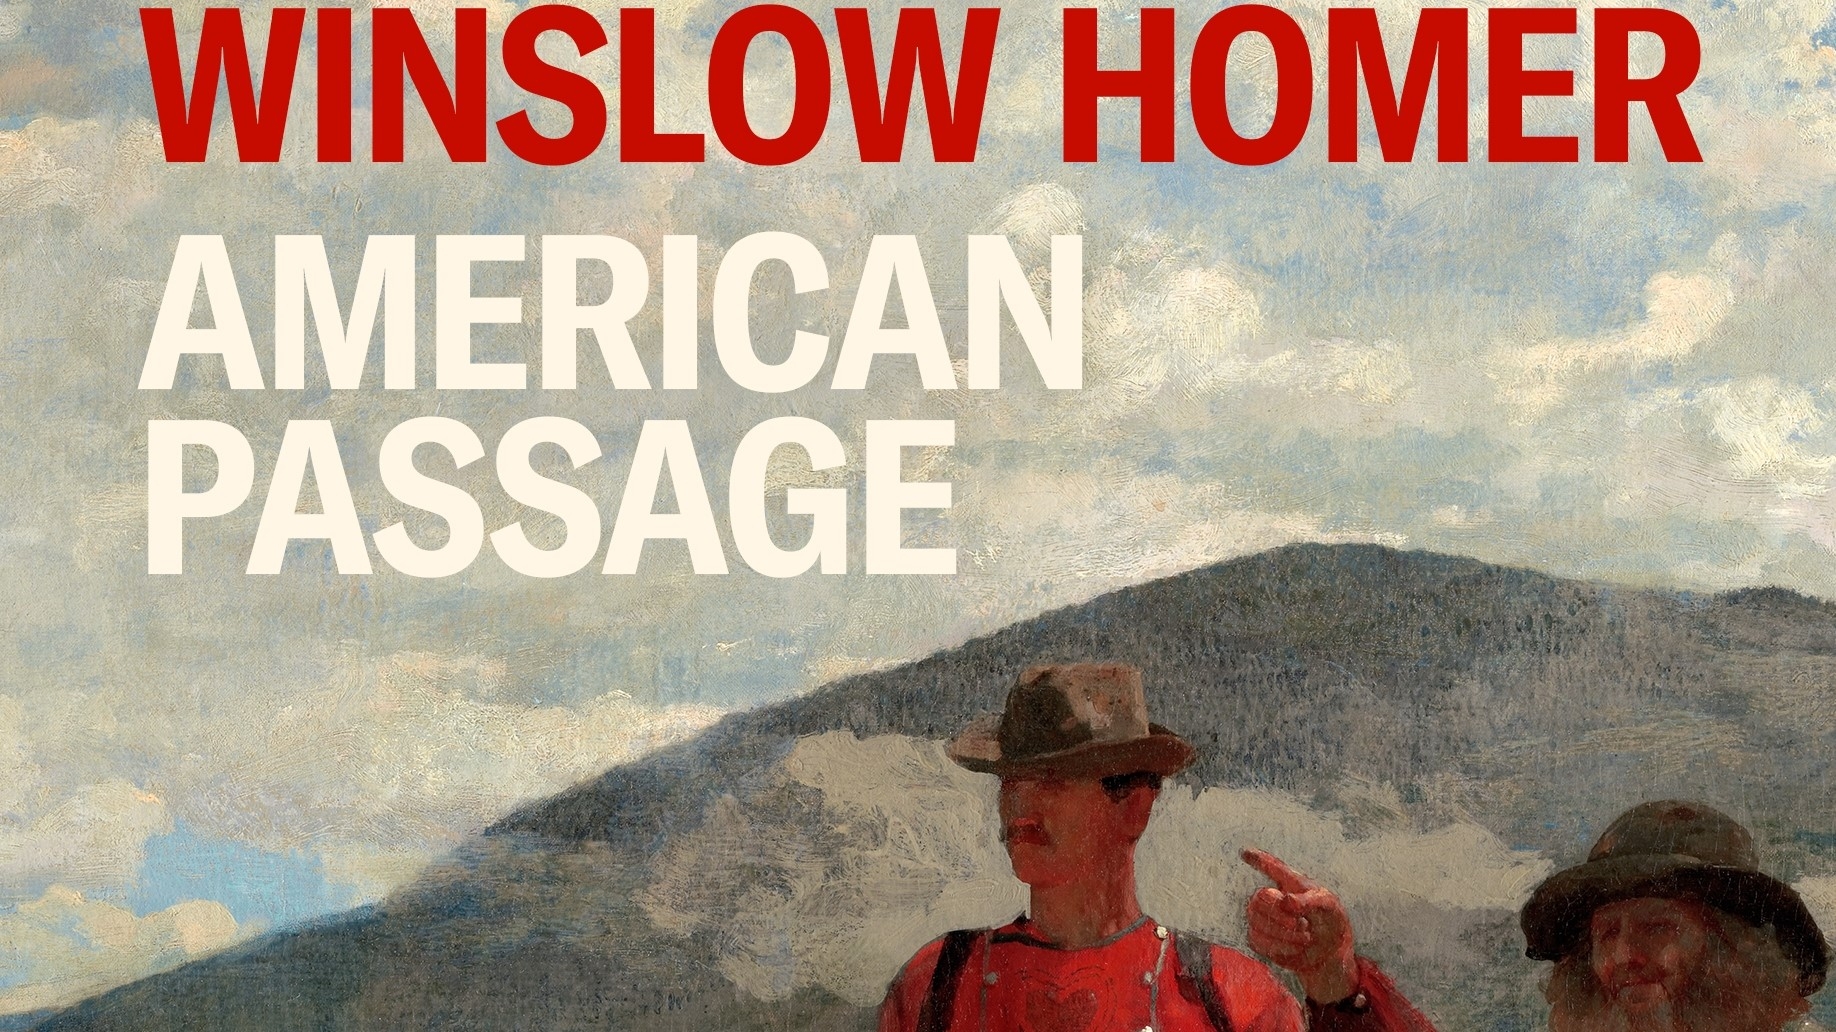 Imagen recortada de la cubierta del libro de Winslow Homer's "American Passage"